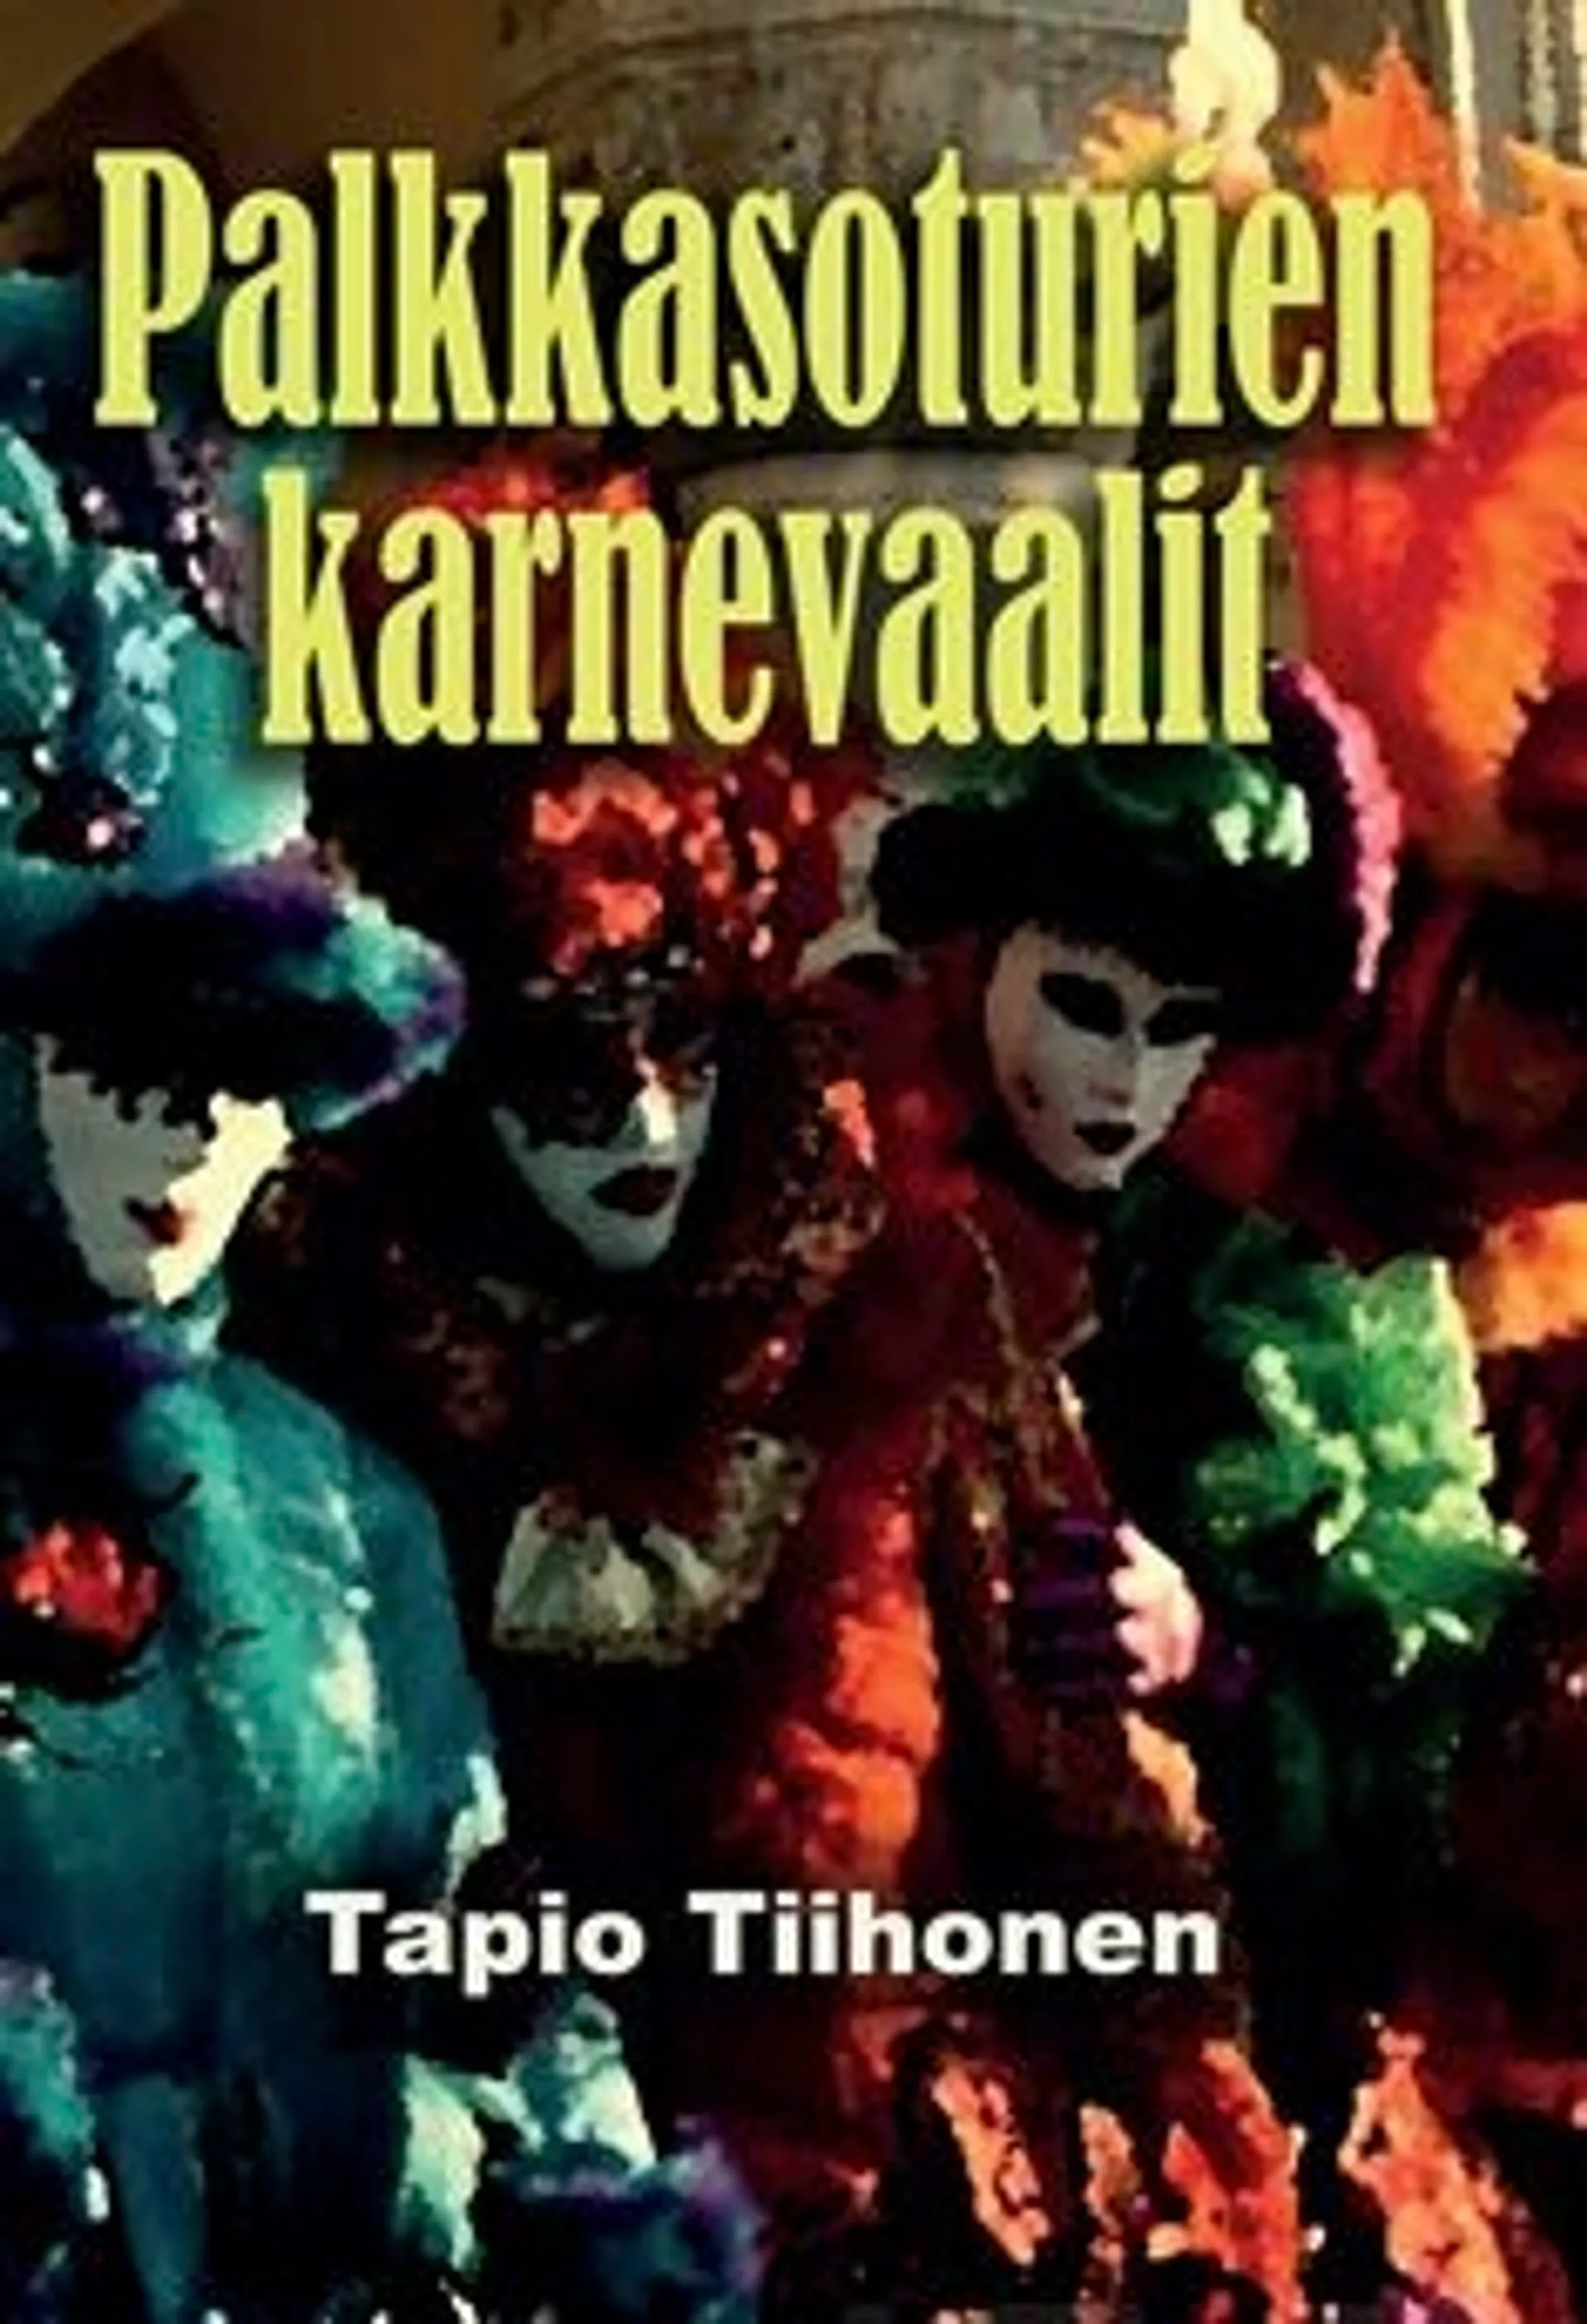 Tiihonen, Palkkasoturien karnevaalit